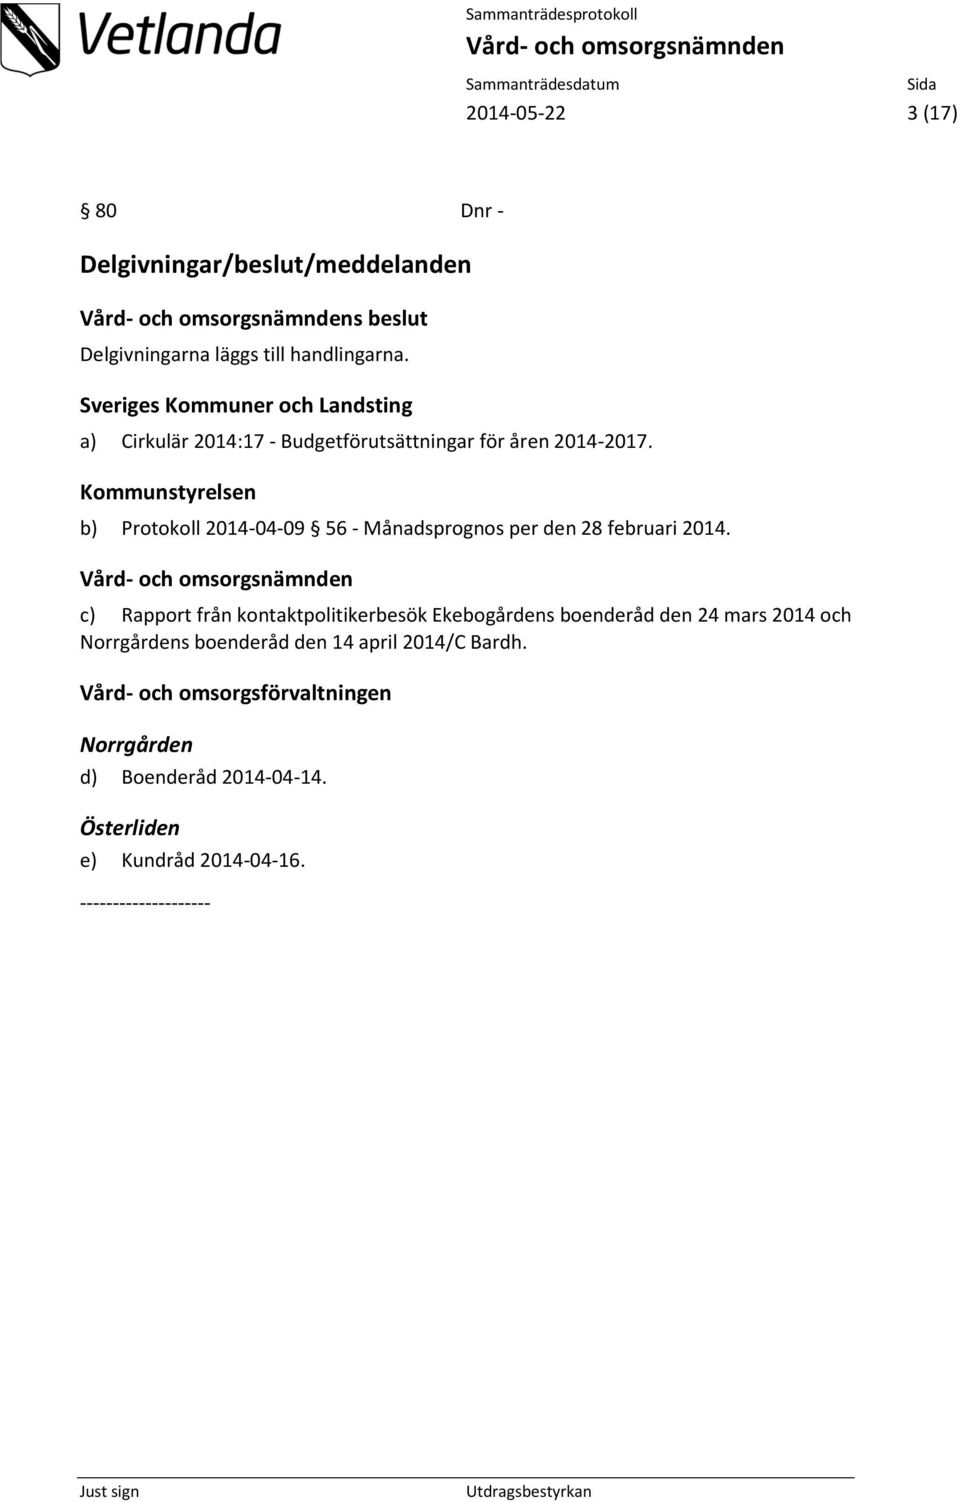 Kommunstyrelsen b) Protokoll 2014-04-09 56 - Månadsprognos per den 28 februari 2014.